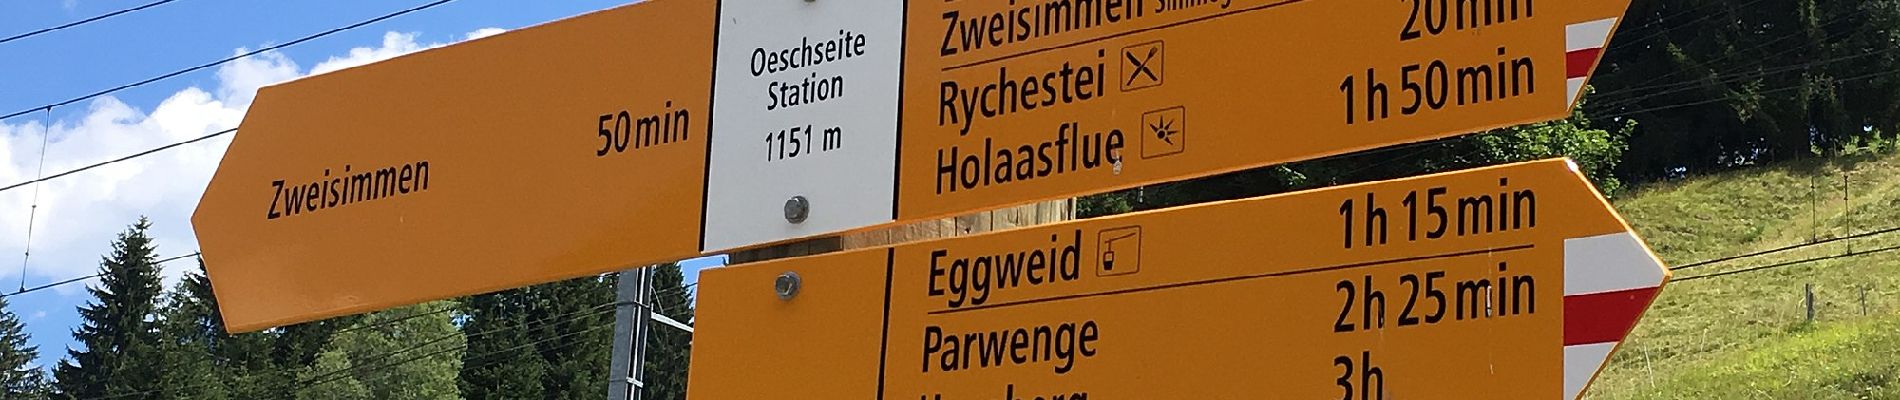 Randonnée A pied Zweisimmen - Eggweid Mittelstation - Oeschseite - Photo